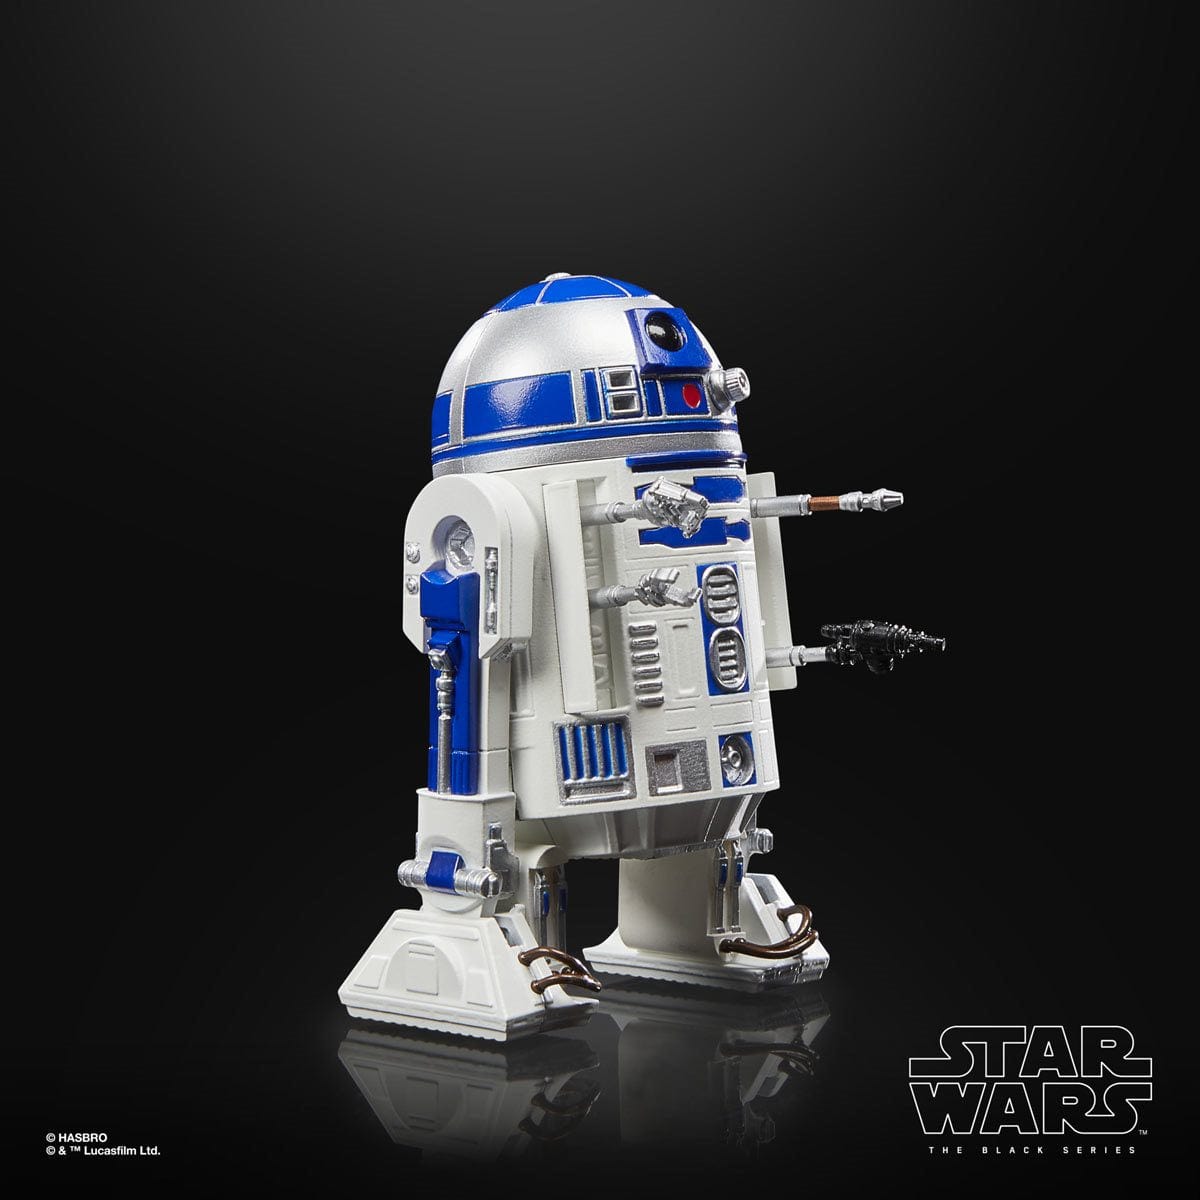 Star Wars The Black Series Return of the Jedi 40th Anniversary 6-Inch R2-D2 (Artoo-Deetoo) AF